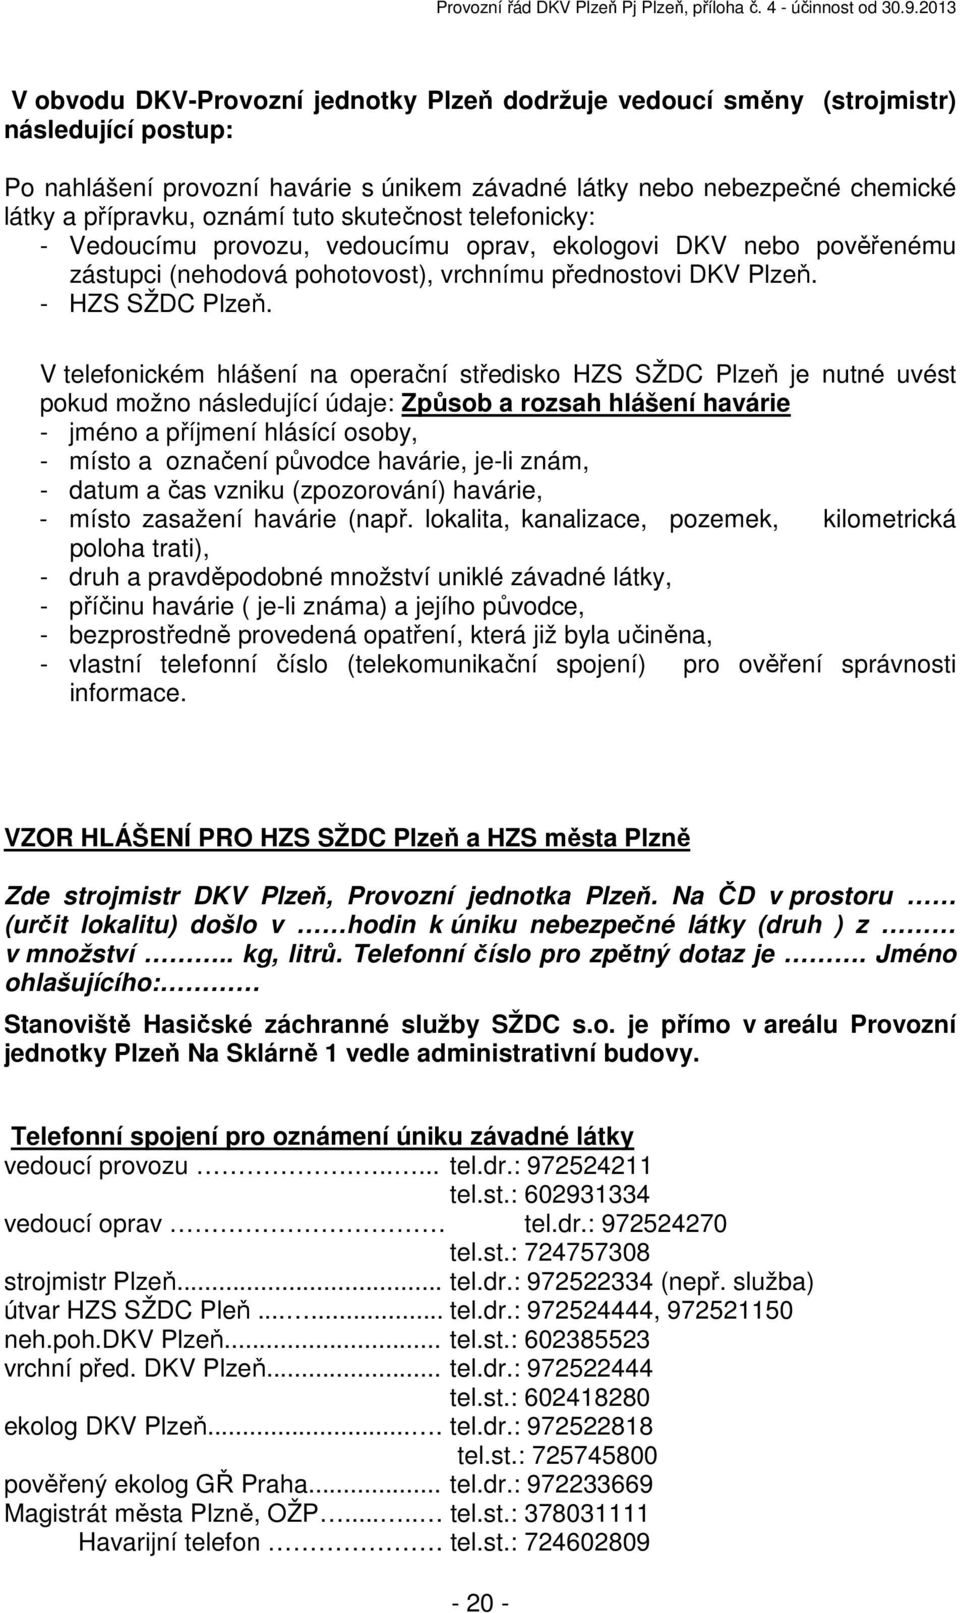 V telefonickém hlášení na operační středisko HZS SŽDC Plzeň je nutné uvést pokud možno následující údaje: Způsob a rozsah hlášení havárie - jméno a příjmení hlásící osoby, - místo a označení původce